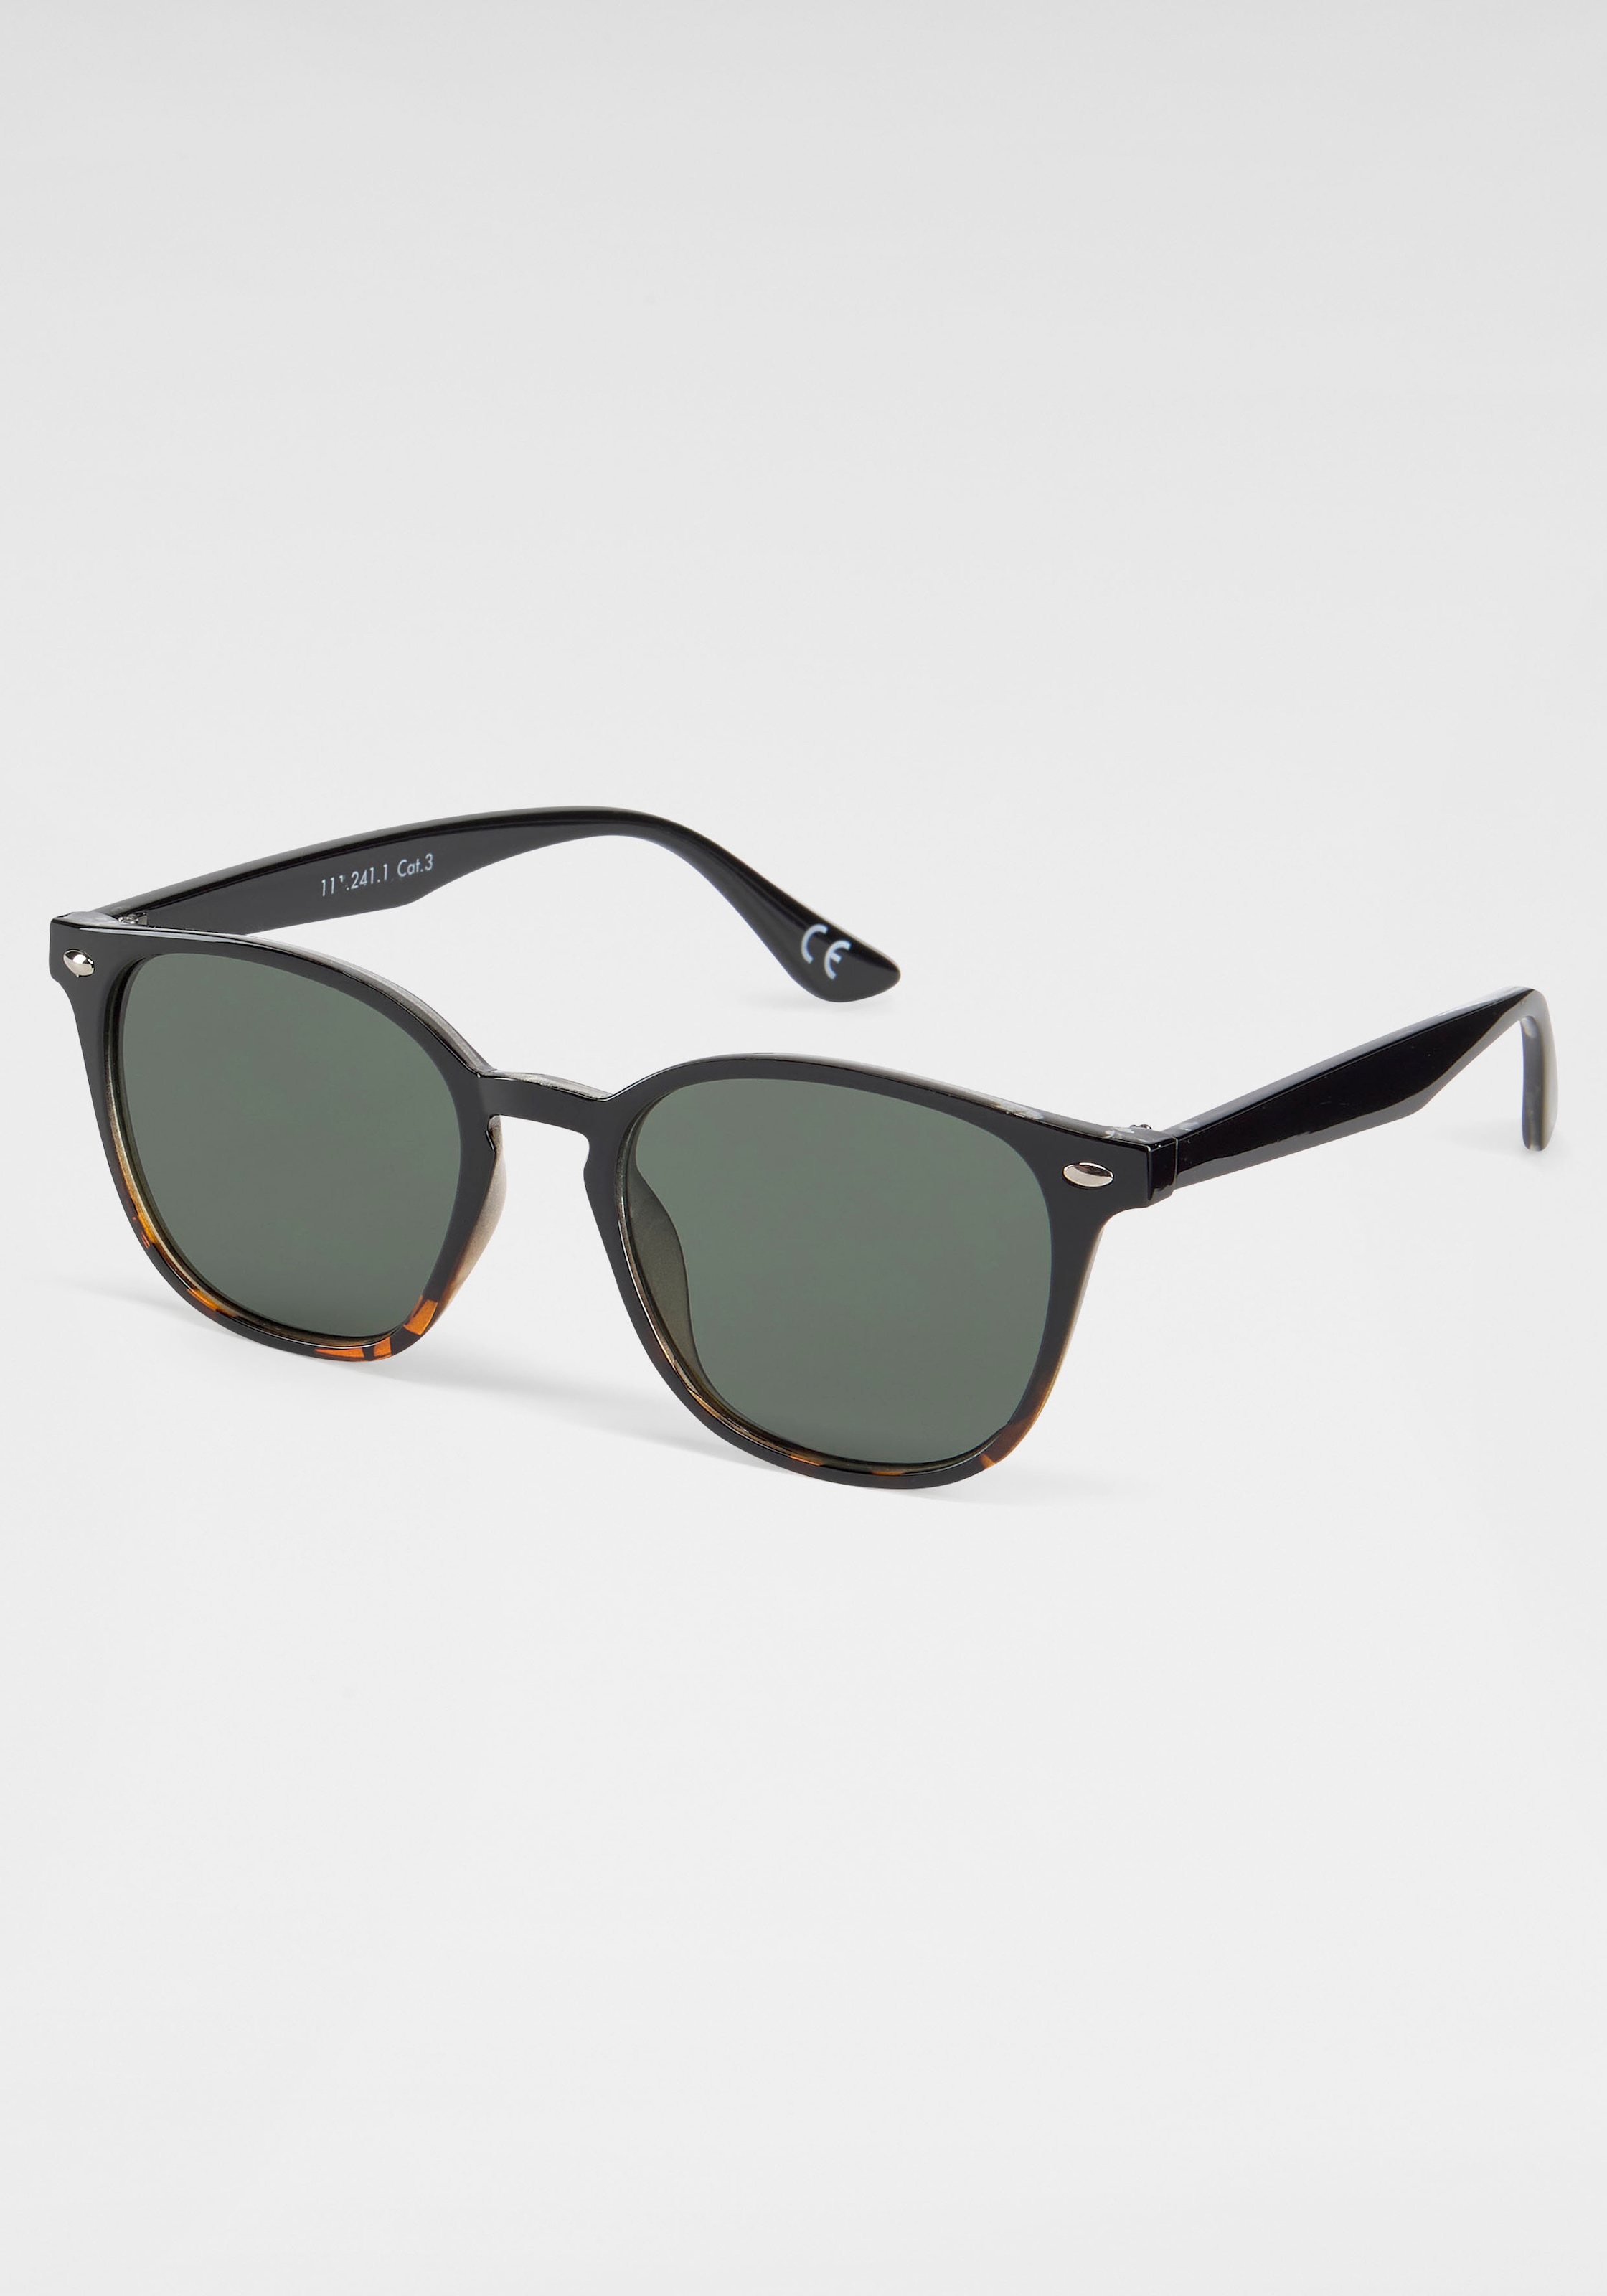 PRIMETTA Eyewear Sonnenbrille kaufen online bei OTTO